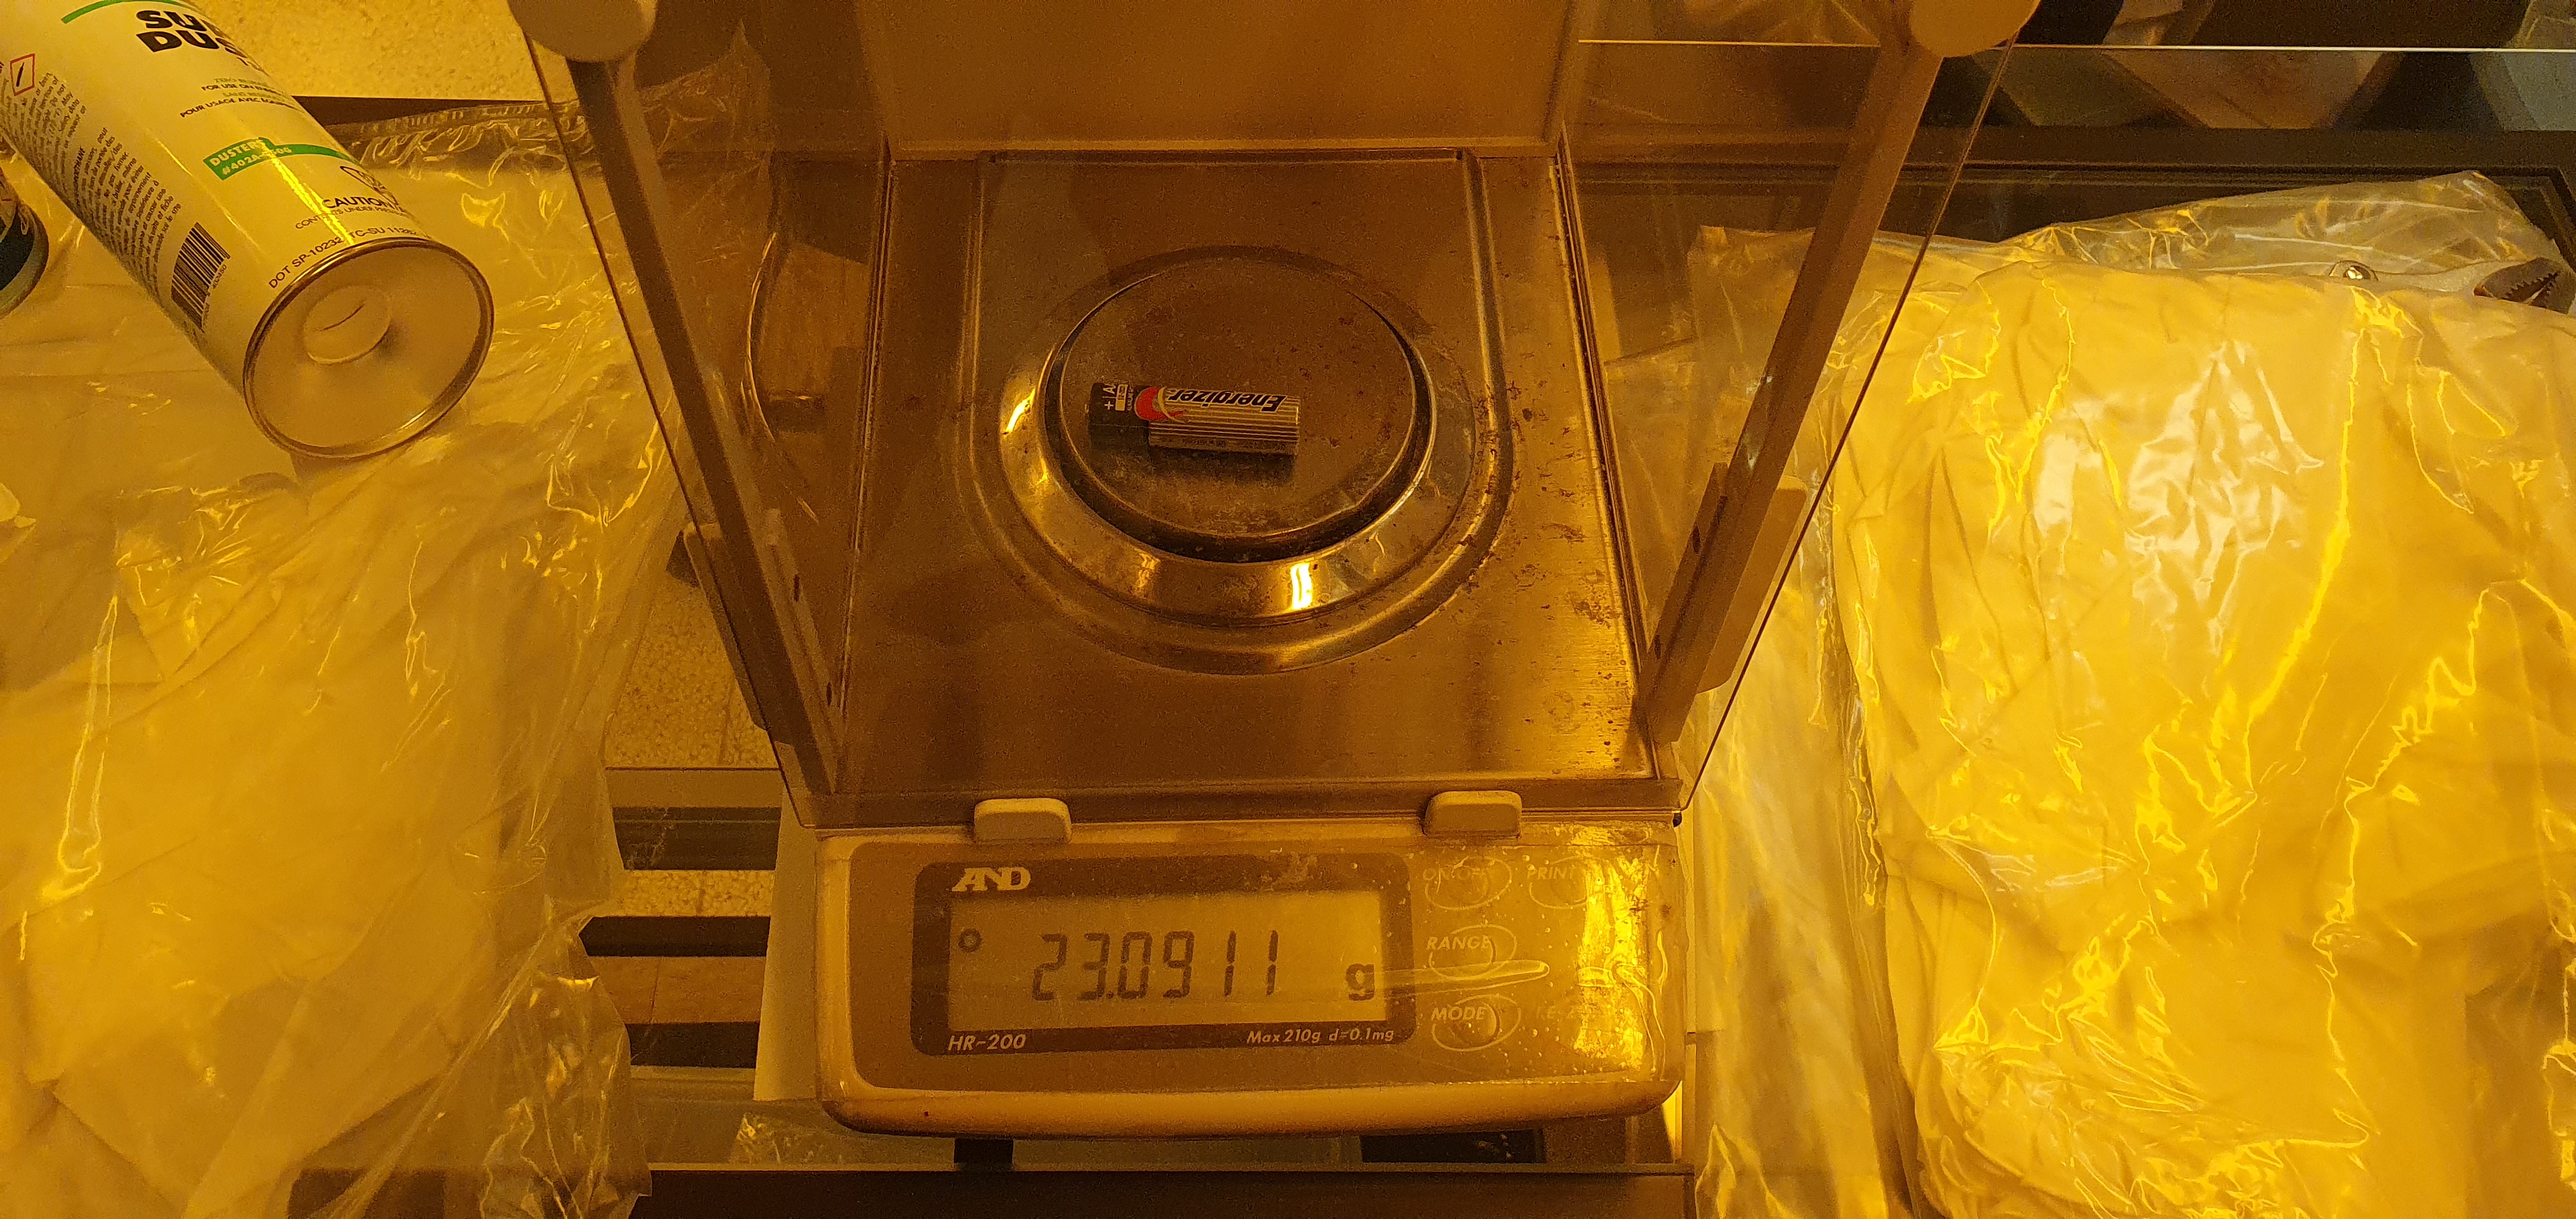 에너자이저 AA 건전지 : 23.0911g 측정.